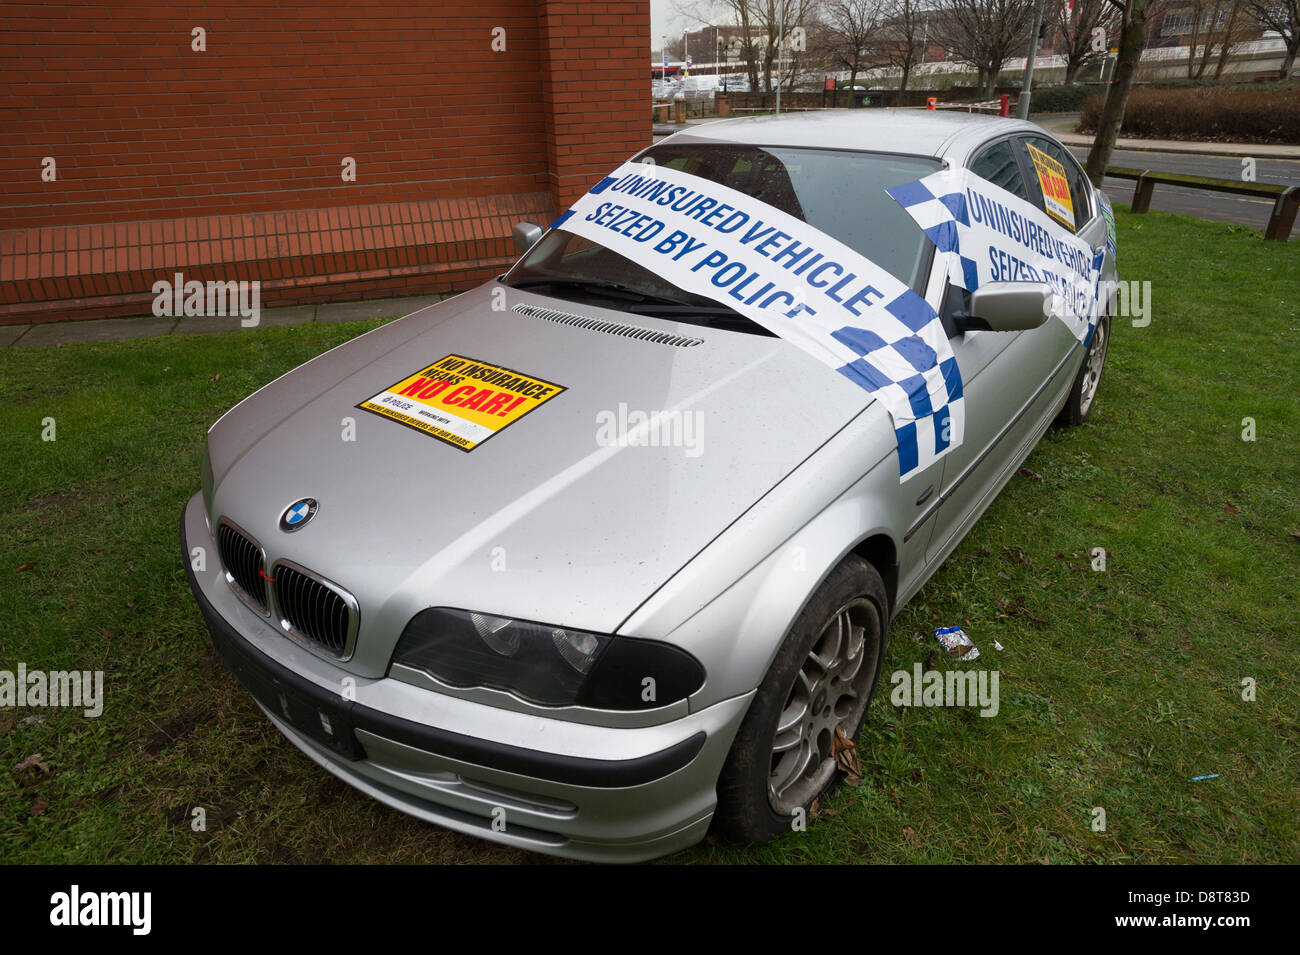 Seized uninsured BMW motor outside police station Stock Photo